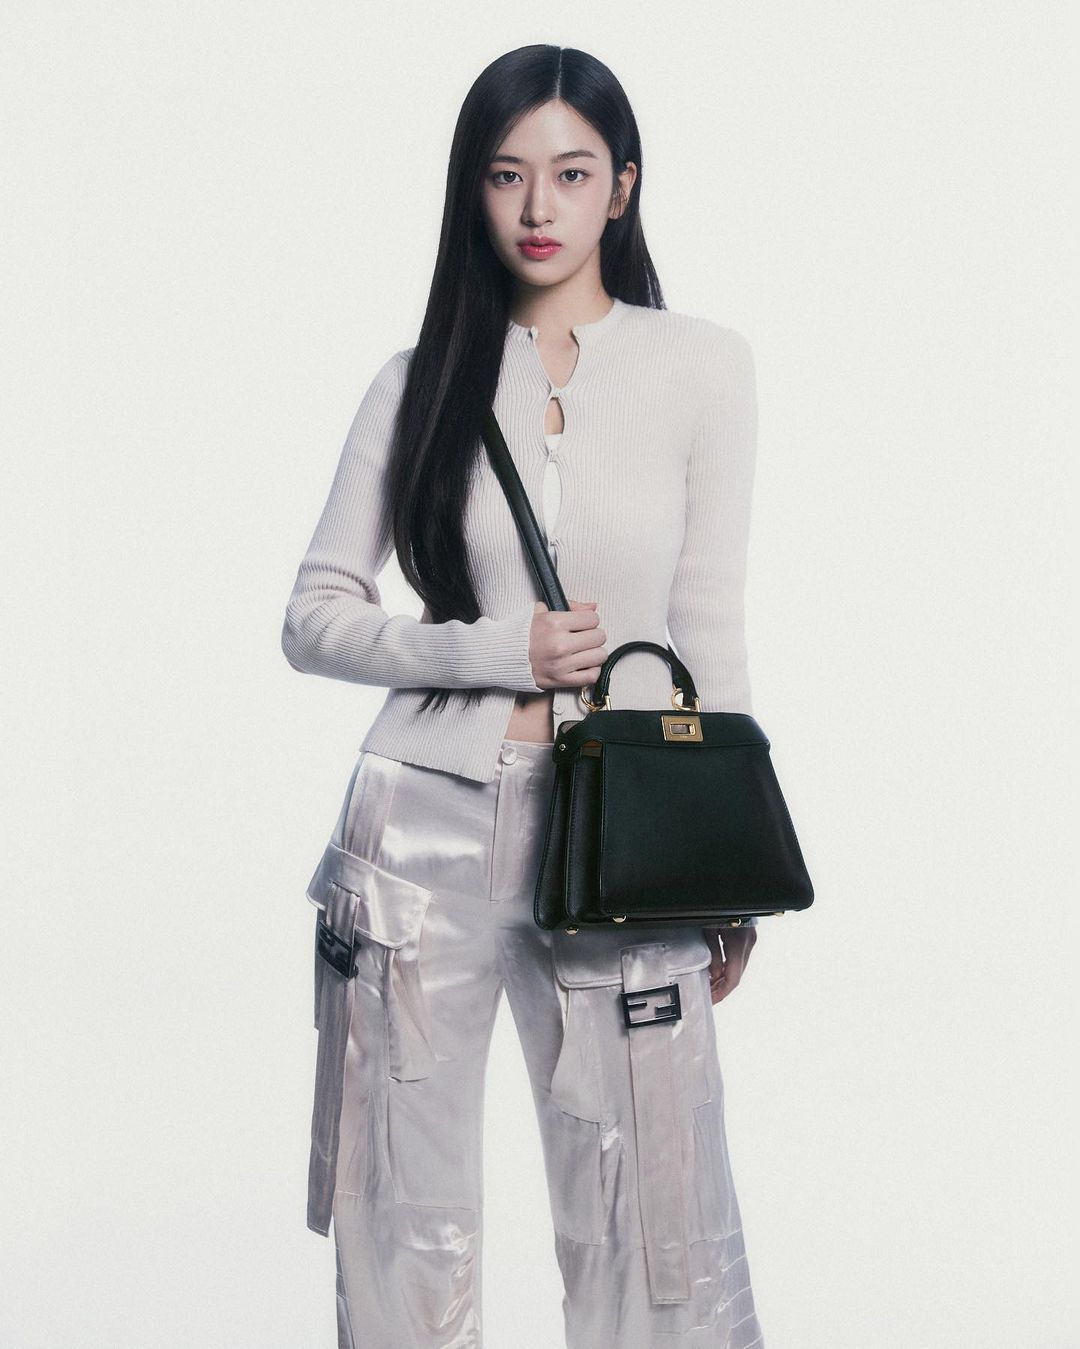 Idol Kpop Brand Ambassador Louis Vuitton Bag